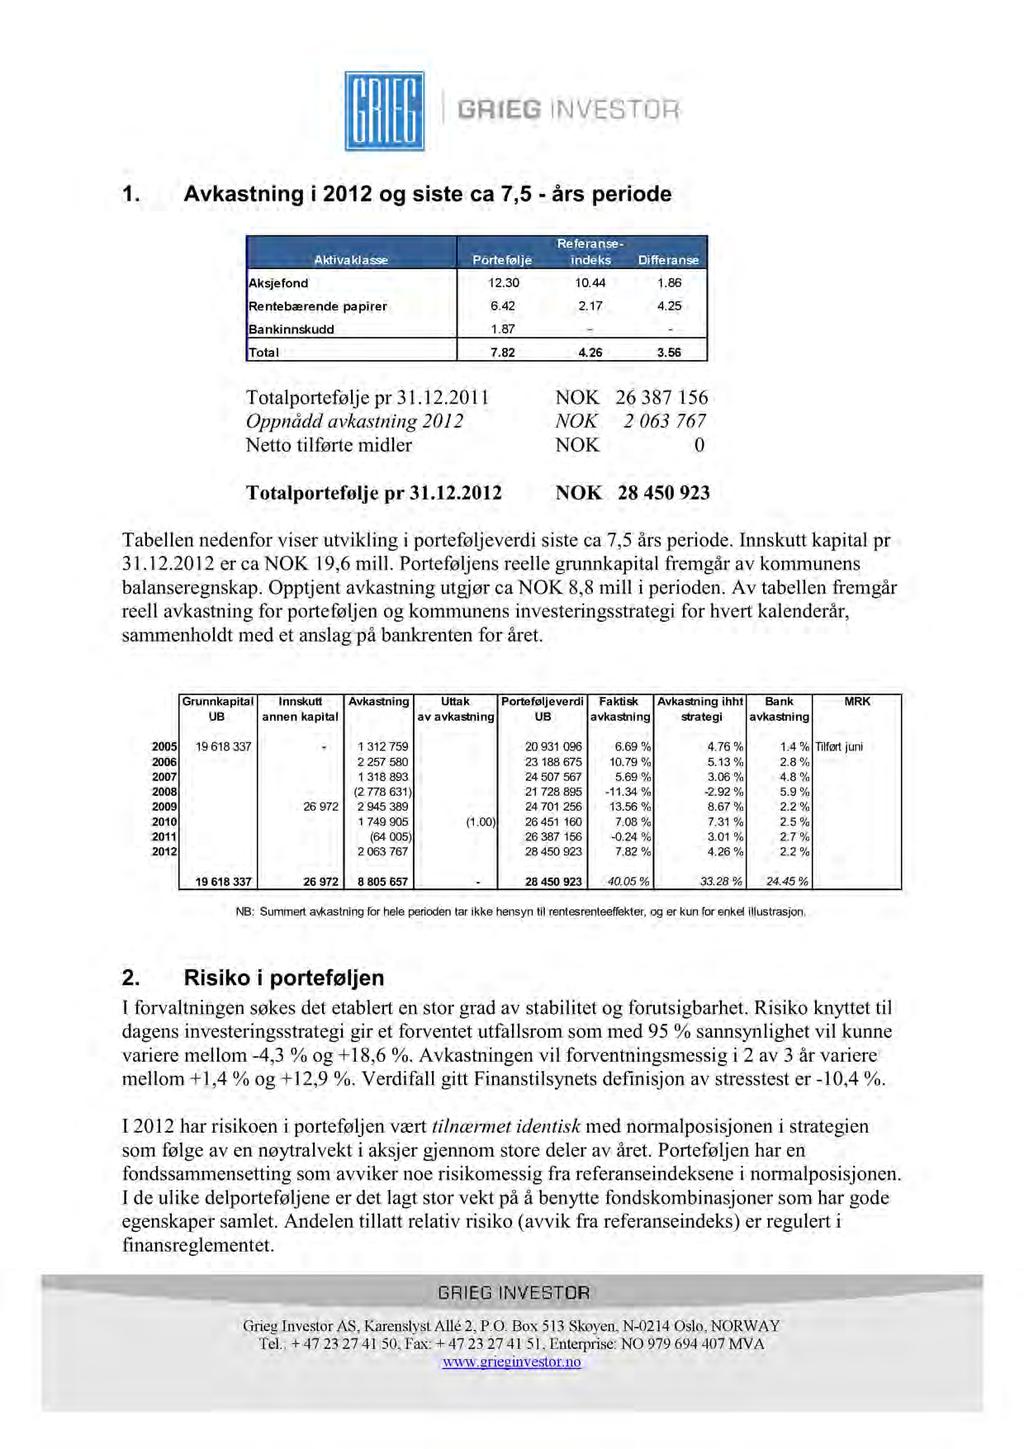 1. Avkastning i 2012 og siste ca 7,5 - års period e Aktivaklasse Portefølje Referanseindeks Differanse Aksjefond 12.30 10.44 1.86 Rentebærende papirer 6.42 2.17 4.25 Bankinnskudd 1.87 - - Total 7.